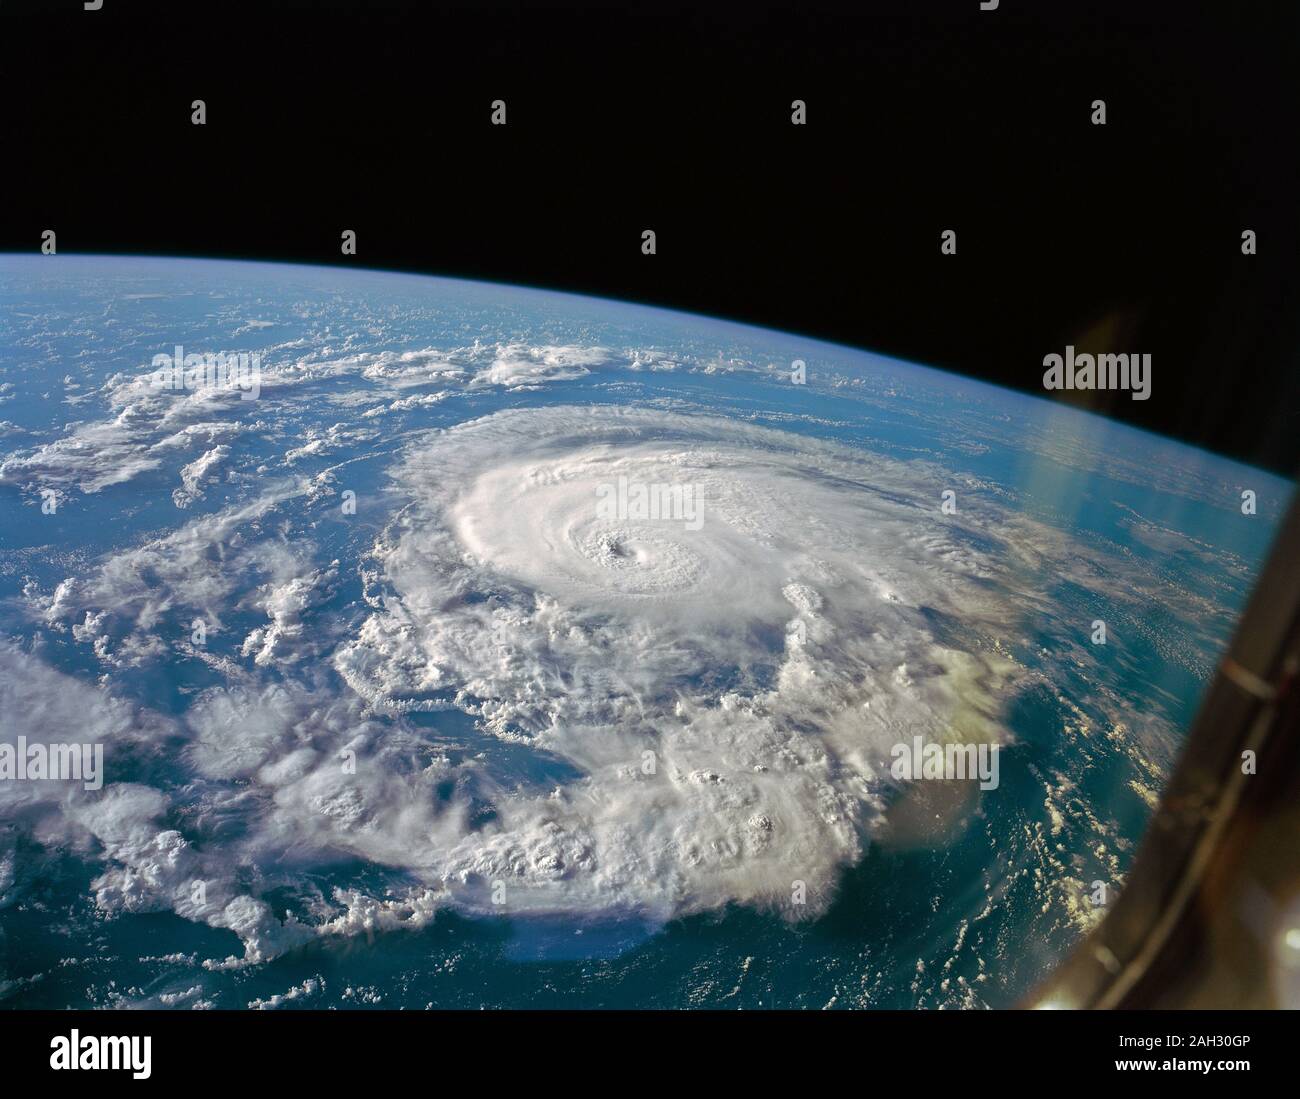 (19 Sept 1992) --- une caméra d'observation de la Terre grand format capturé cette scène de l'ouragan Bonnie durant la phase tardive de la mission. Bonnie a été localisé à environ 500 kilomètres de Miami près de un point centré à 35,4 degrés de latitude nord et 56,8 degrés de longitude ouest. La caméra Linhof visait à travers l'un de l'arrière du poste de pilotage (windows remarque léger reflet à droite). Les membres de l'équipe a remarqué l'oeil bien définies dans cet ouragan, par rapport à une presque inexistante dans le cas de l'œil de l'Ouragan Iniki, qui était relativement dispersée par le début de la mission. Si Banque D'Images